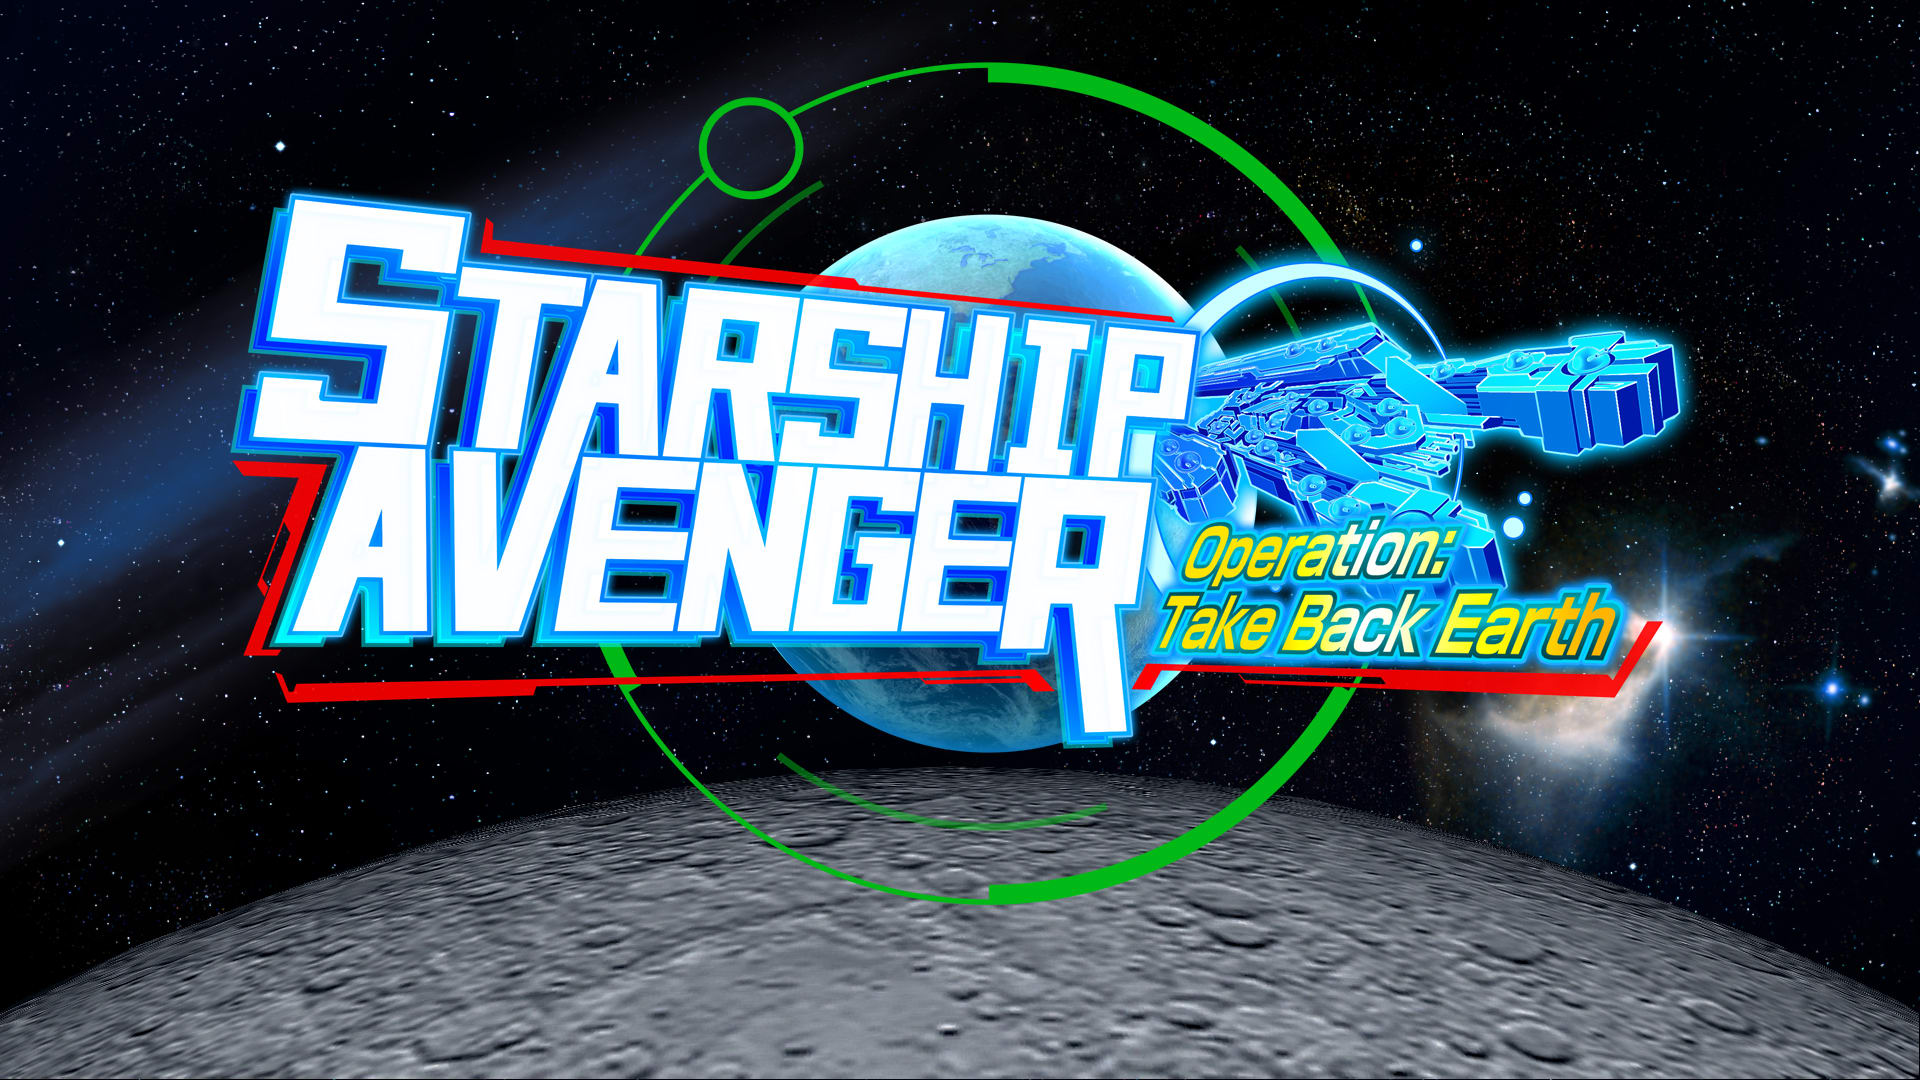 STARSHIP AVENGER
Operation: Take Back Earth 1